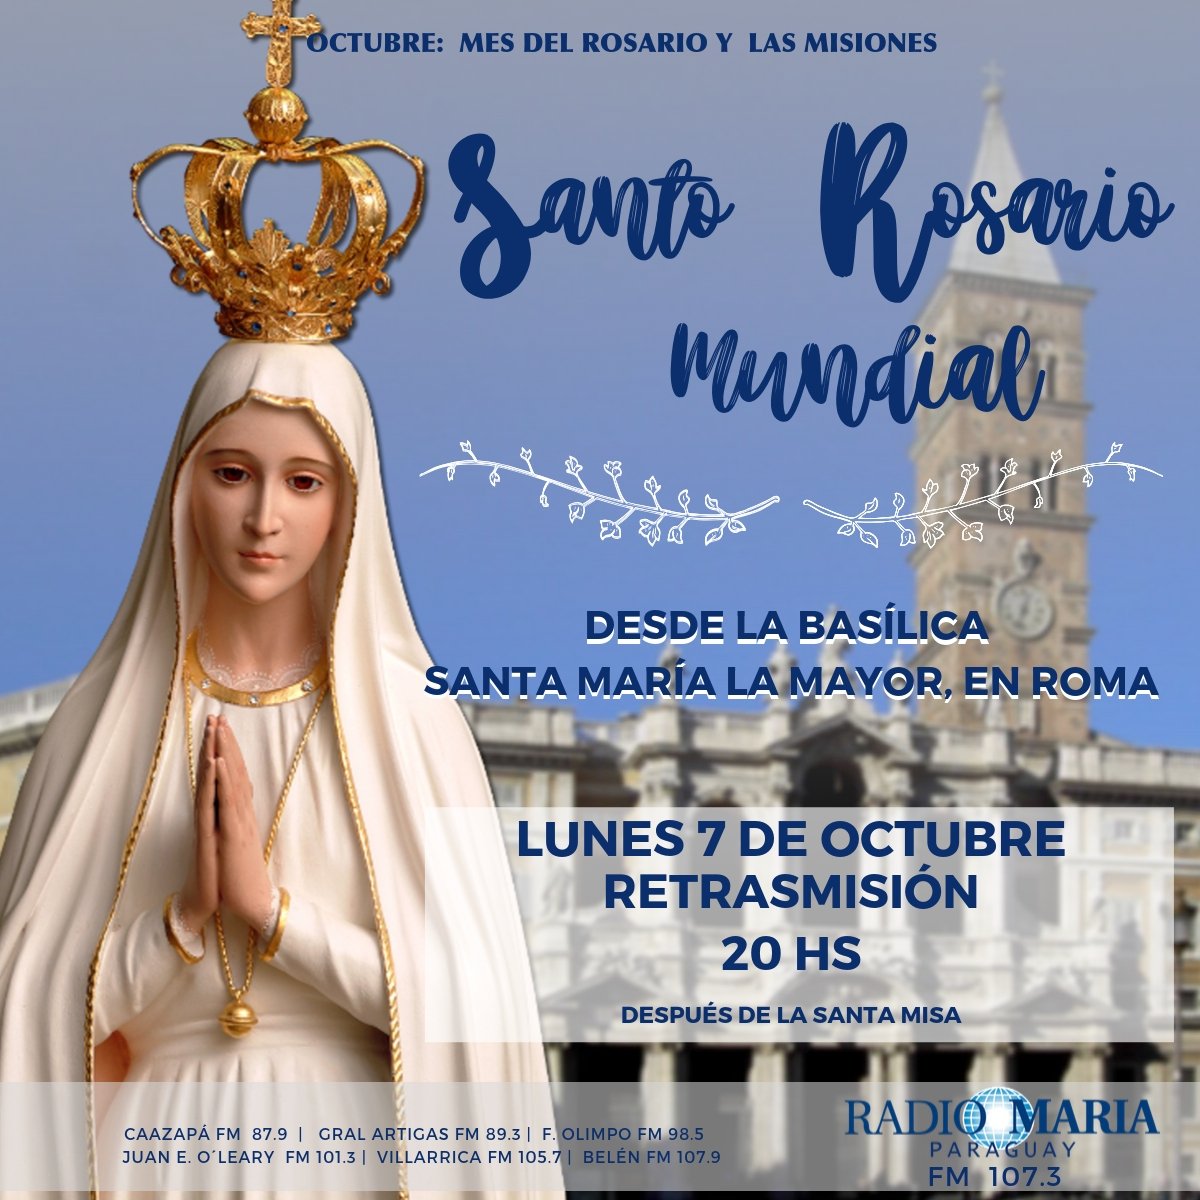 Radio María on Twitter: "Compartimos nuevamente contigo el #SantoRosarioMundial después de la Santa Misa de las 19 hs. ¡Unite en la oración con nosotros! https://t.co/Q7c3R0i6nE https://t.co/hLmCZfyWvq" / Twitter